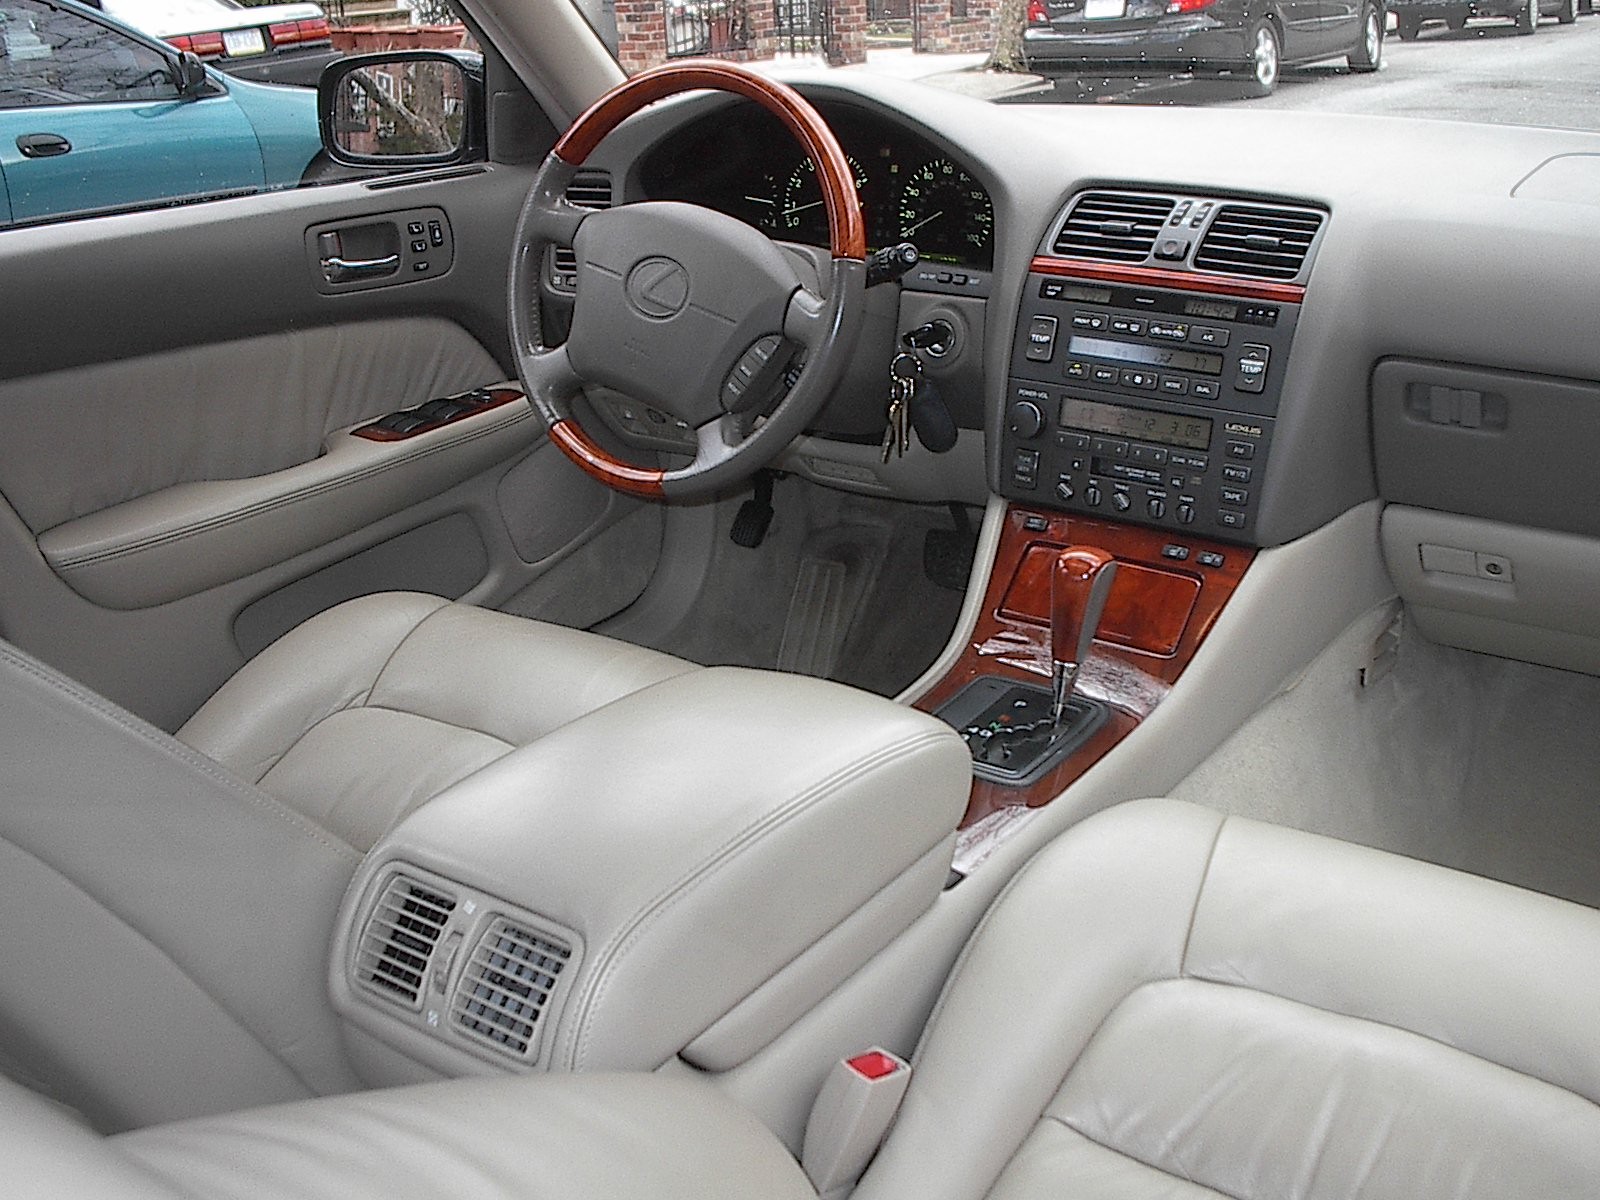 Lexus_LS_400_model_year_2000_interior